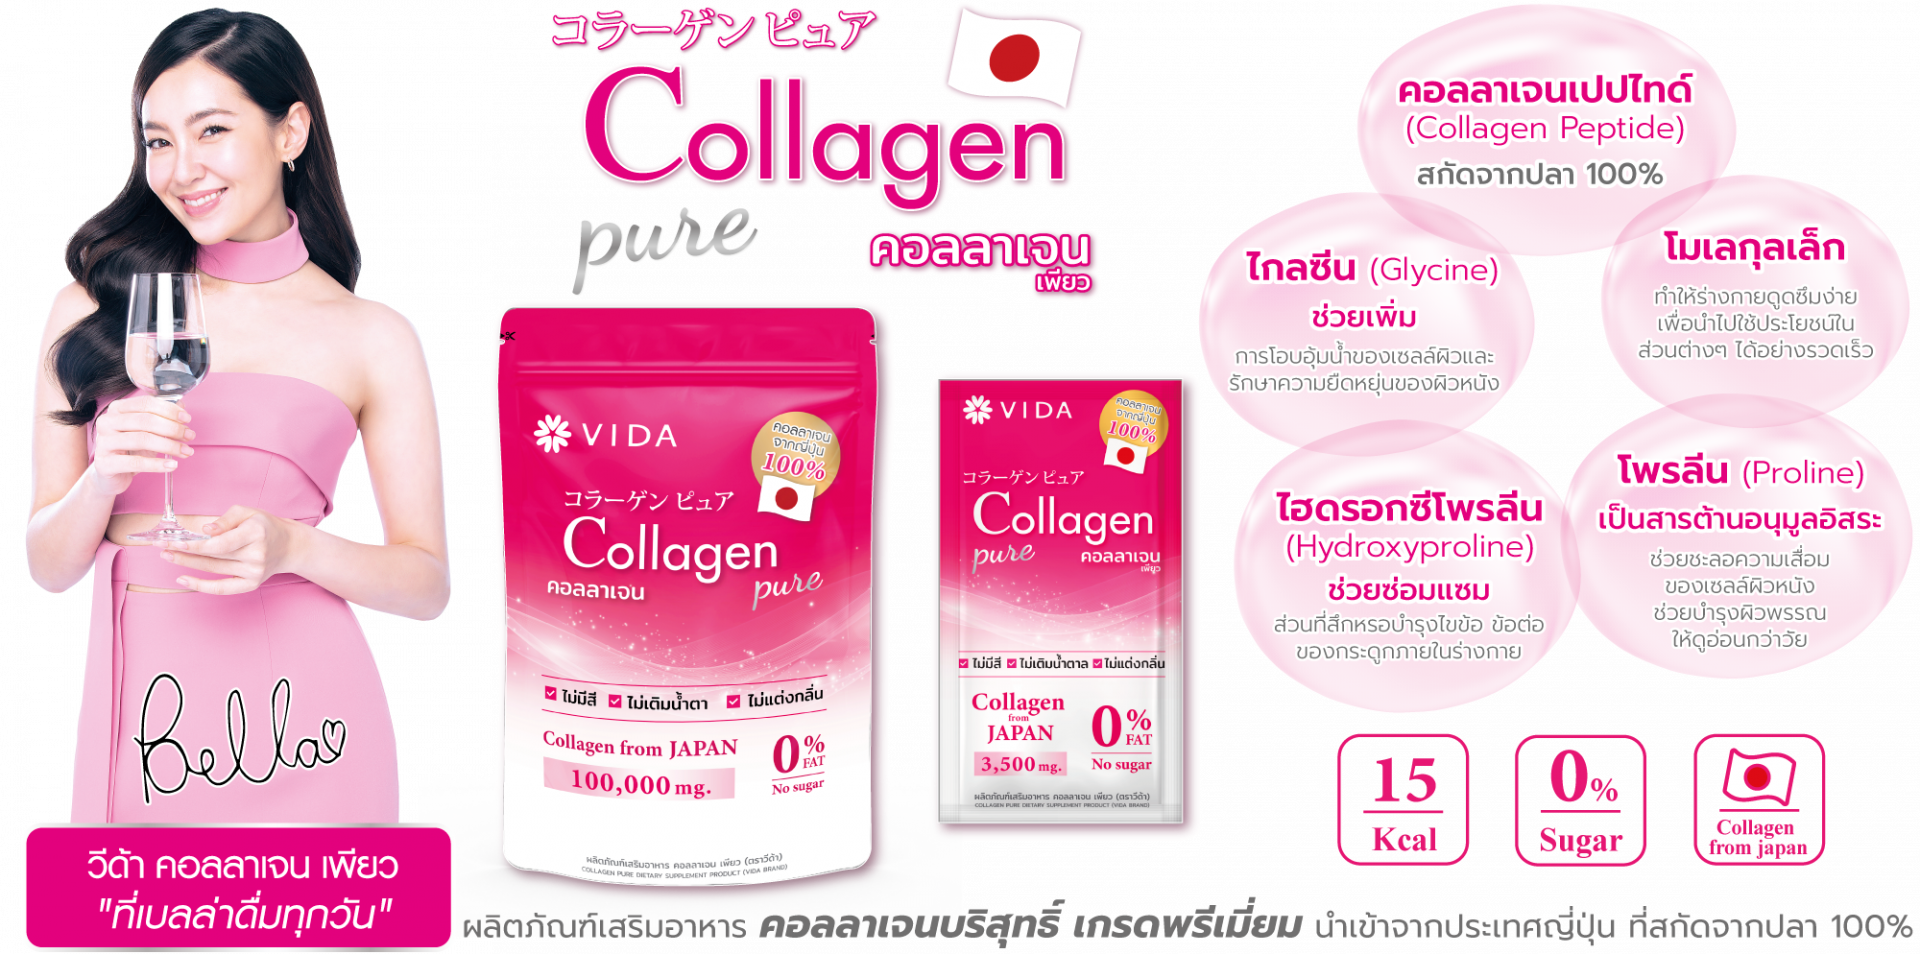 วีด้า คอลลาเจน เพียว vida collagen pure